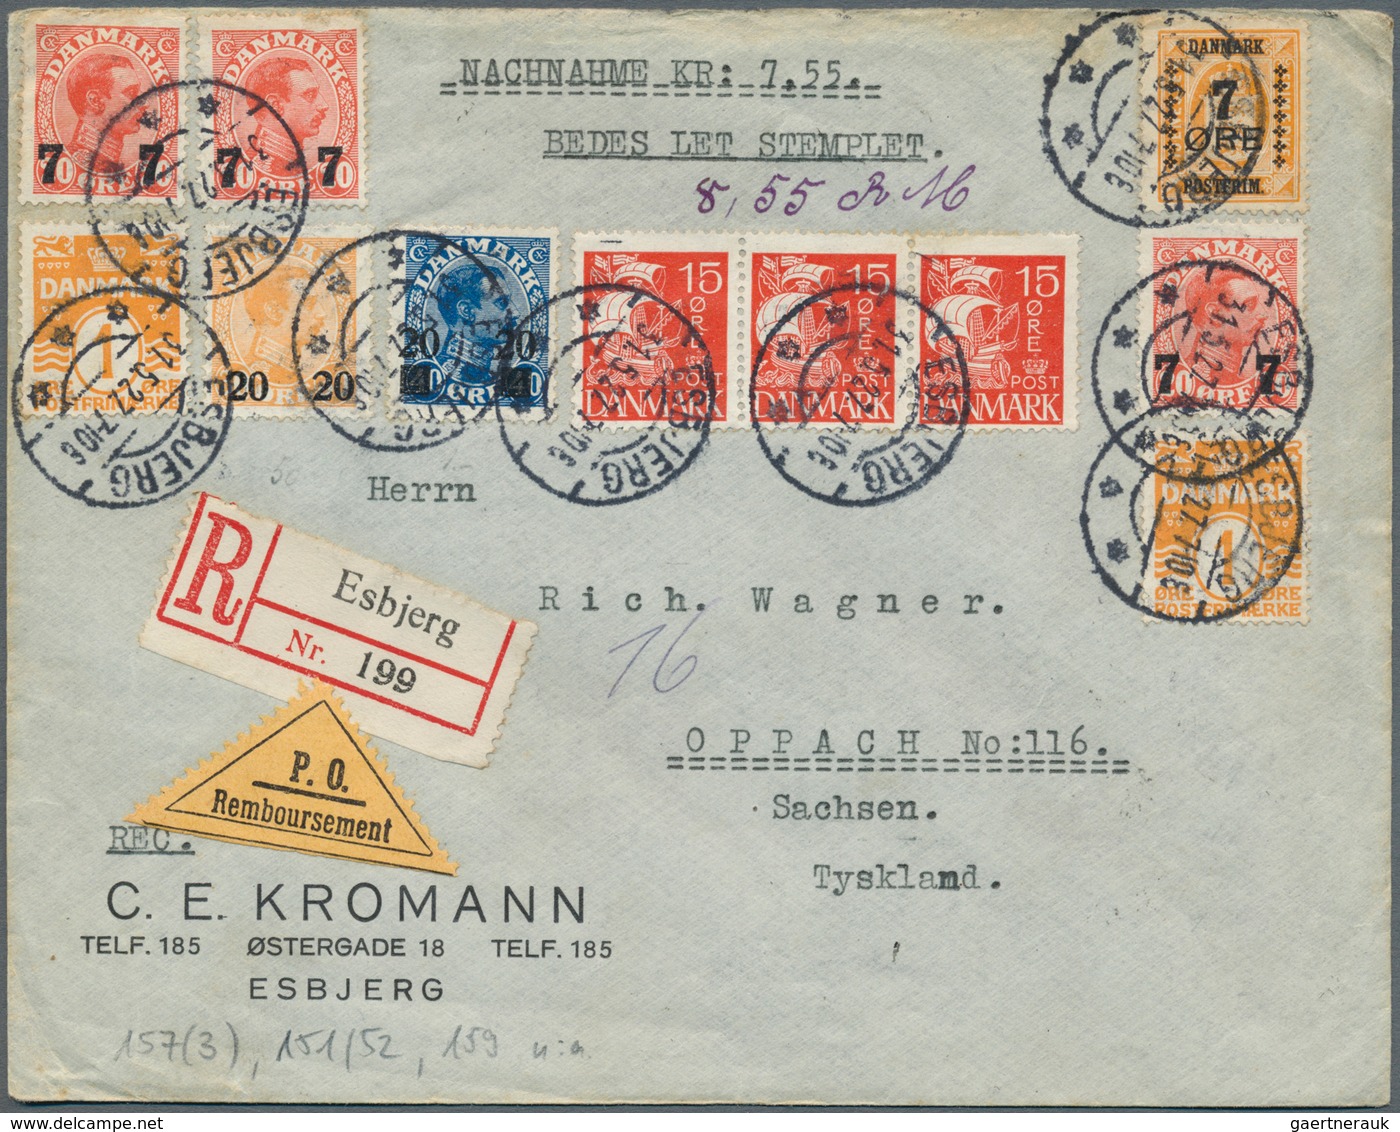 26217 Dänemark: 1835/1969, Sammlung von insgesamt ca. 110 Belegen und einigen losen Marken, angefangen mit